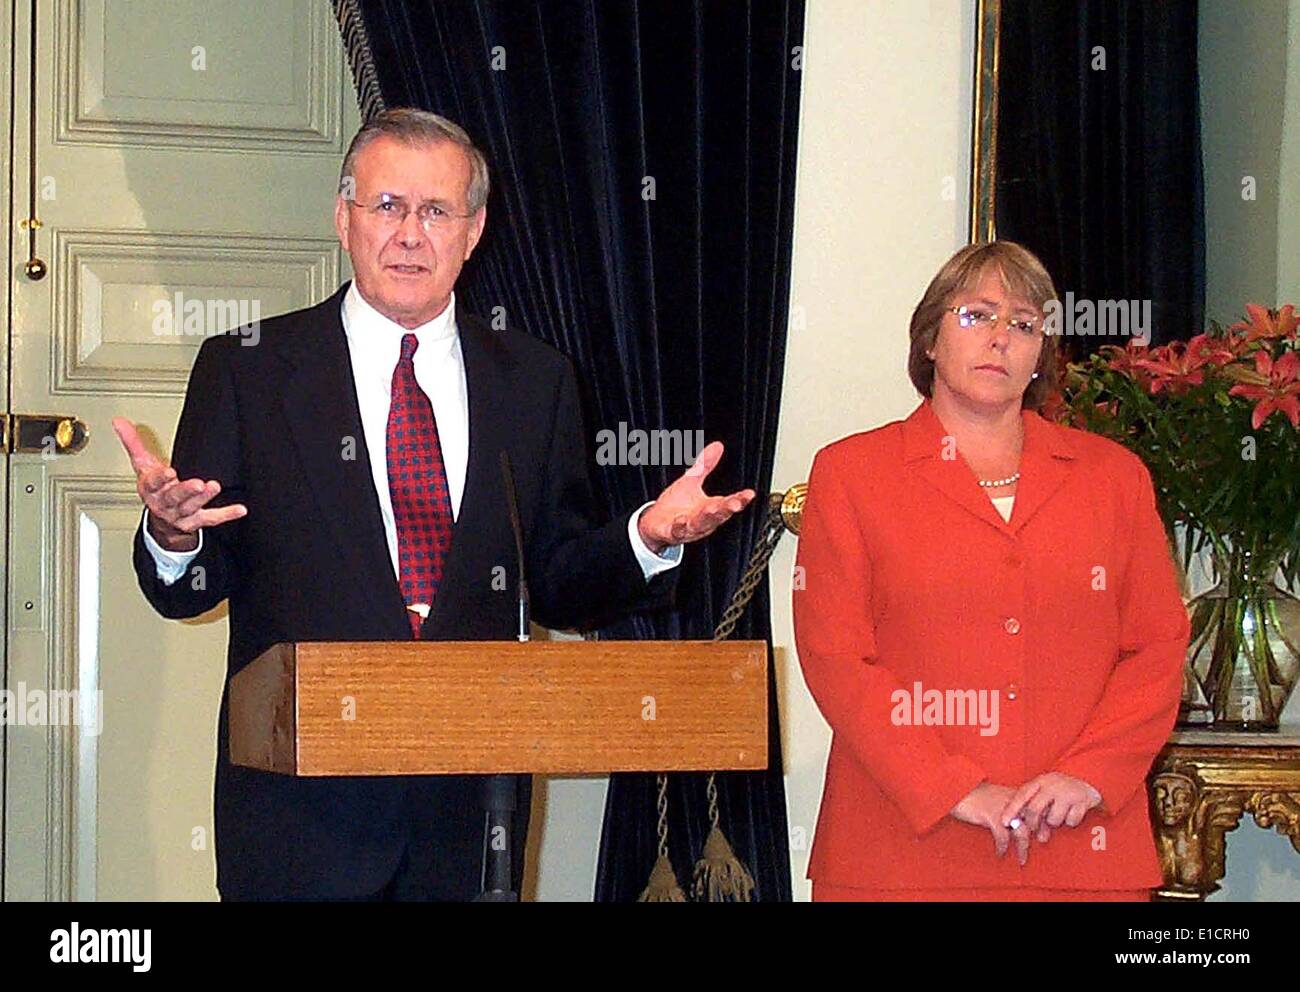 el-secretario-de-defensa-donald-h-rumsfeld-y-el-ministro-de-defensa-de-chile-michelle-bachelet-santiago-chile-18-de-noviembre-de-2002-e1crh0.jpg